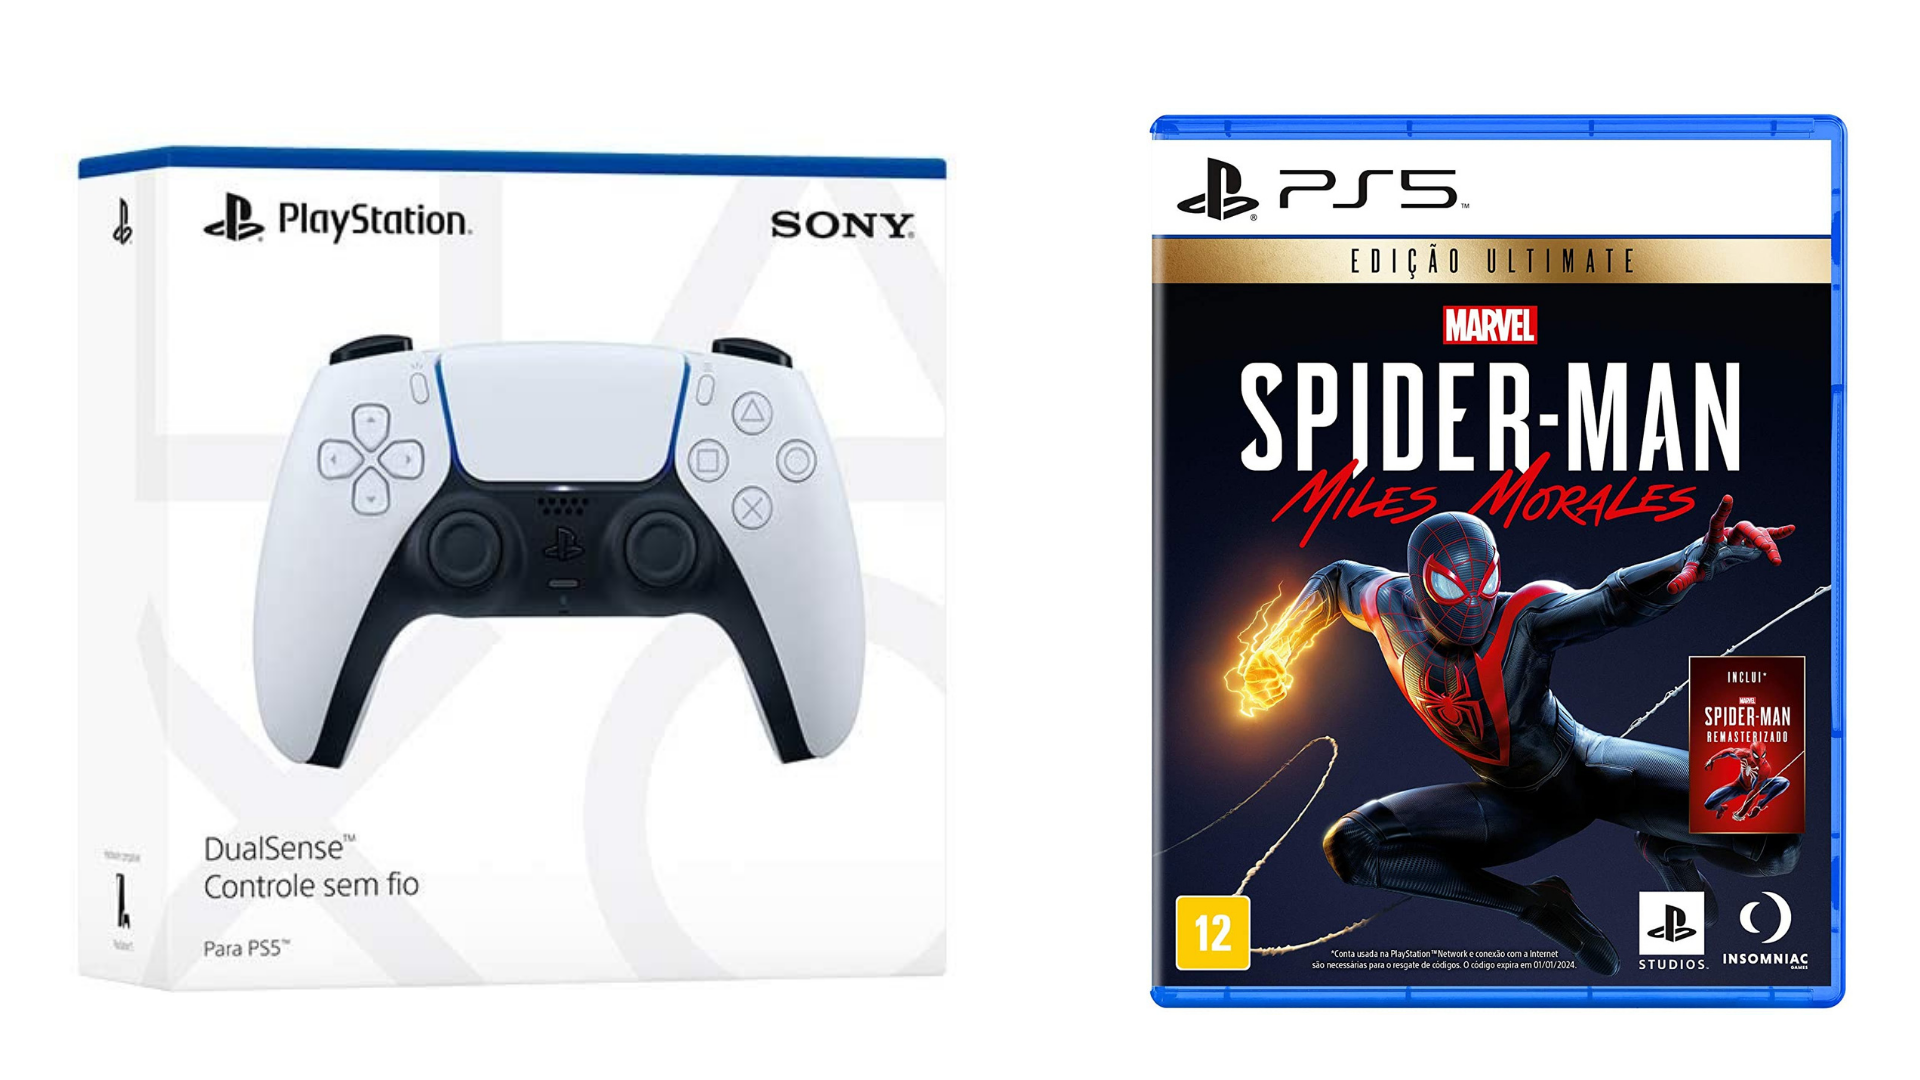 Days of Play: Sony anuncia promoção com edição especial do PS4 e